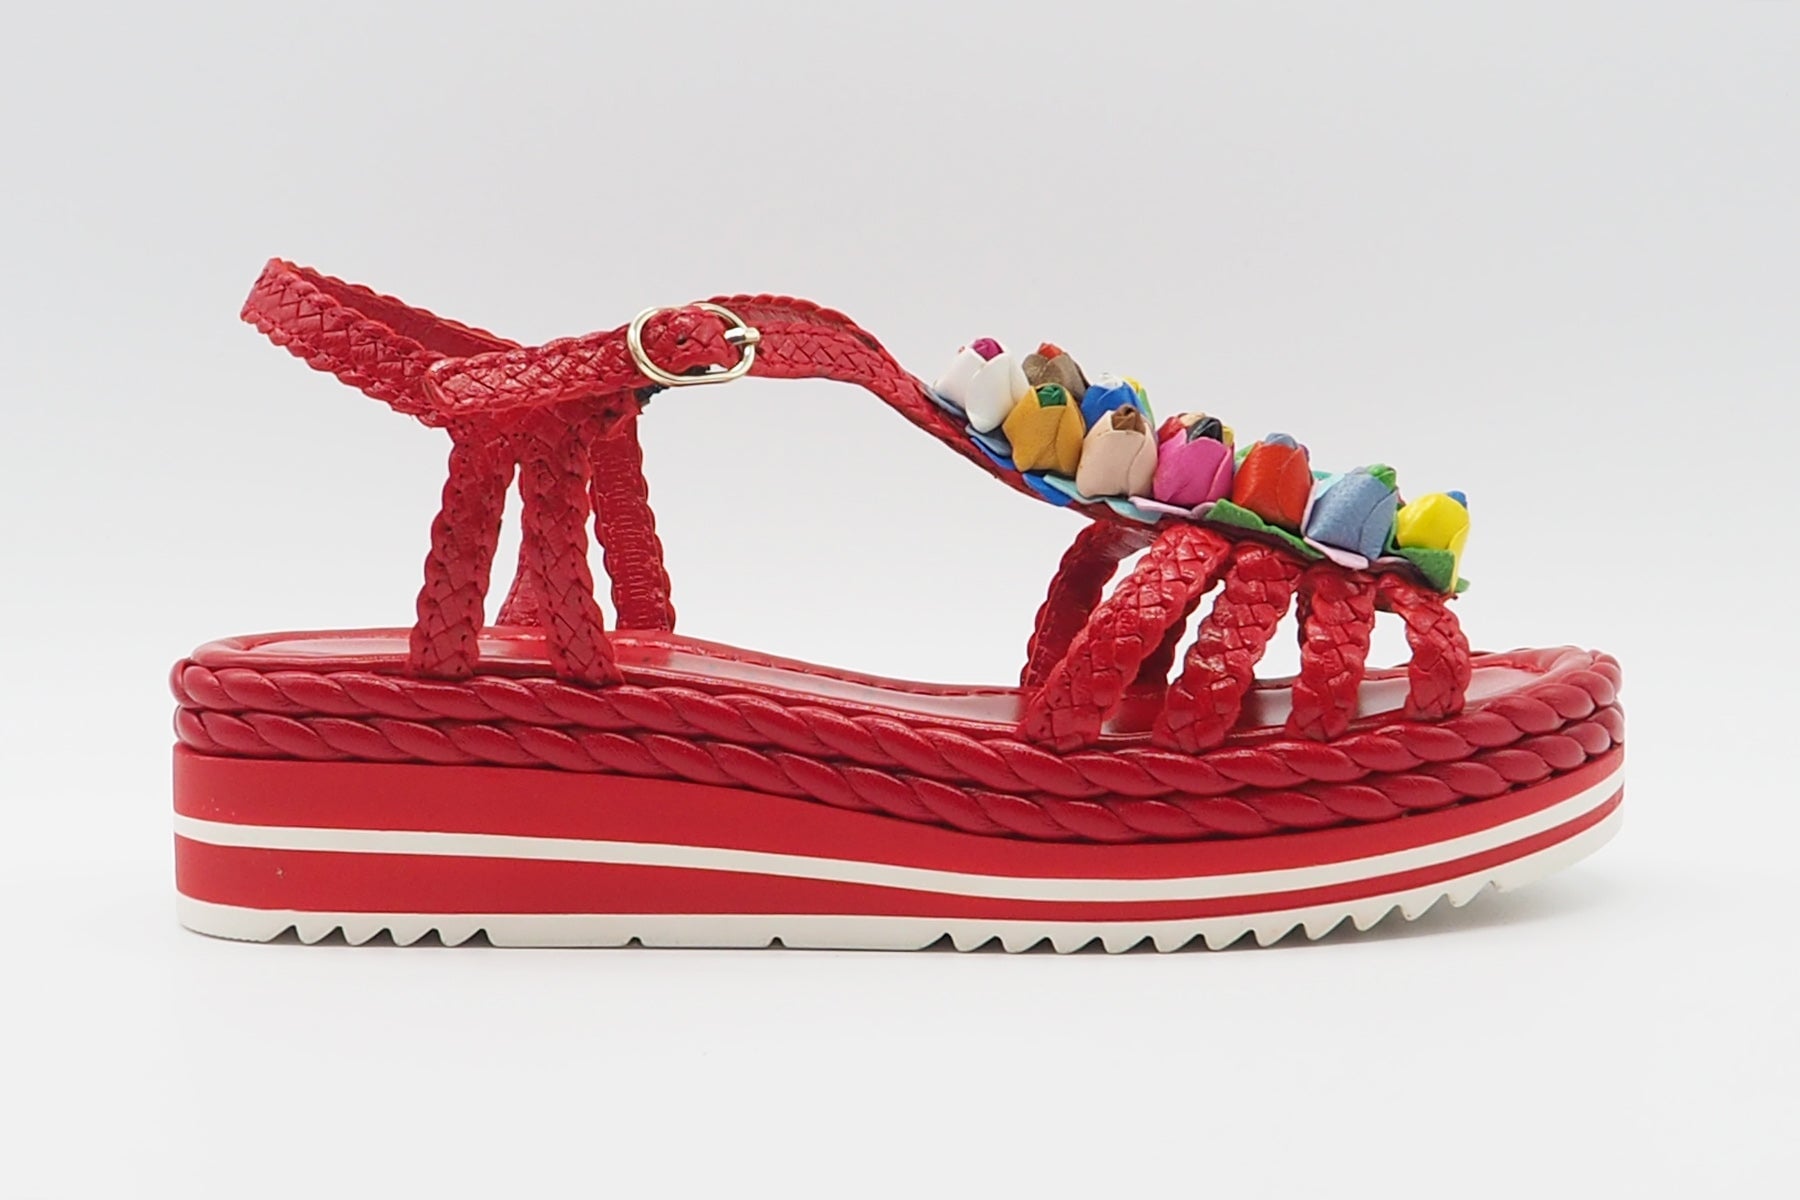 Damen Sandale aus geflochtenem Leder in Rot mit bunte Blumen - Absatz 4cm Damen Sandalen Pons Quintana 